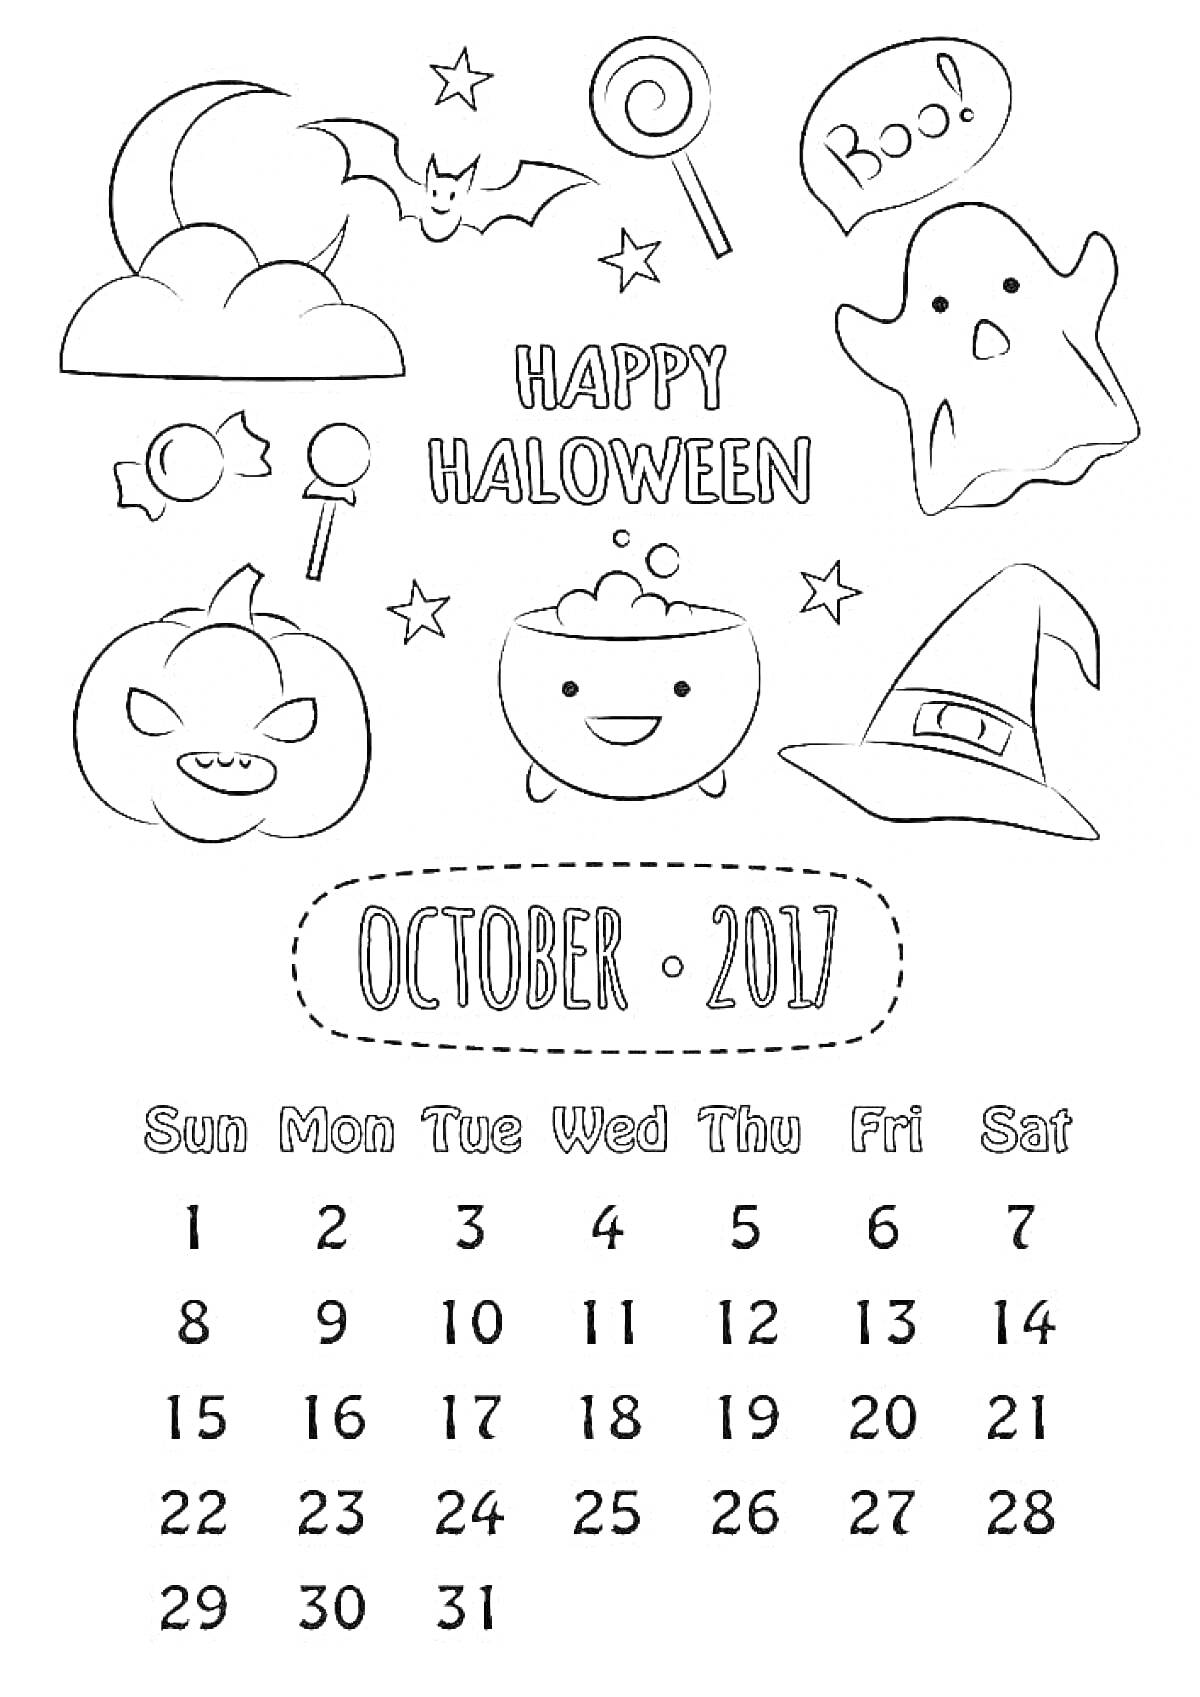 Раскраска Календарь на октябрь 2017 года с элементами Хэллоуина: летучая мышь, ведьмин котел, шляпа ведьмы, привидение, надпись 'Boo!', тыква-фонарь, леденец на палочке, звезды, облако и конфеты.